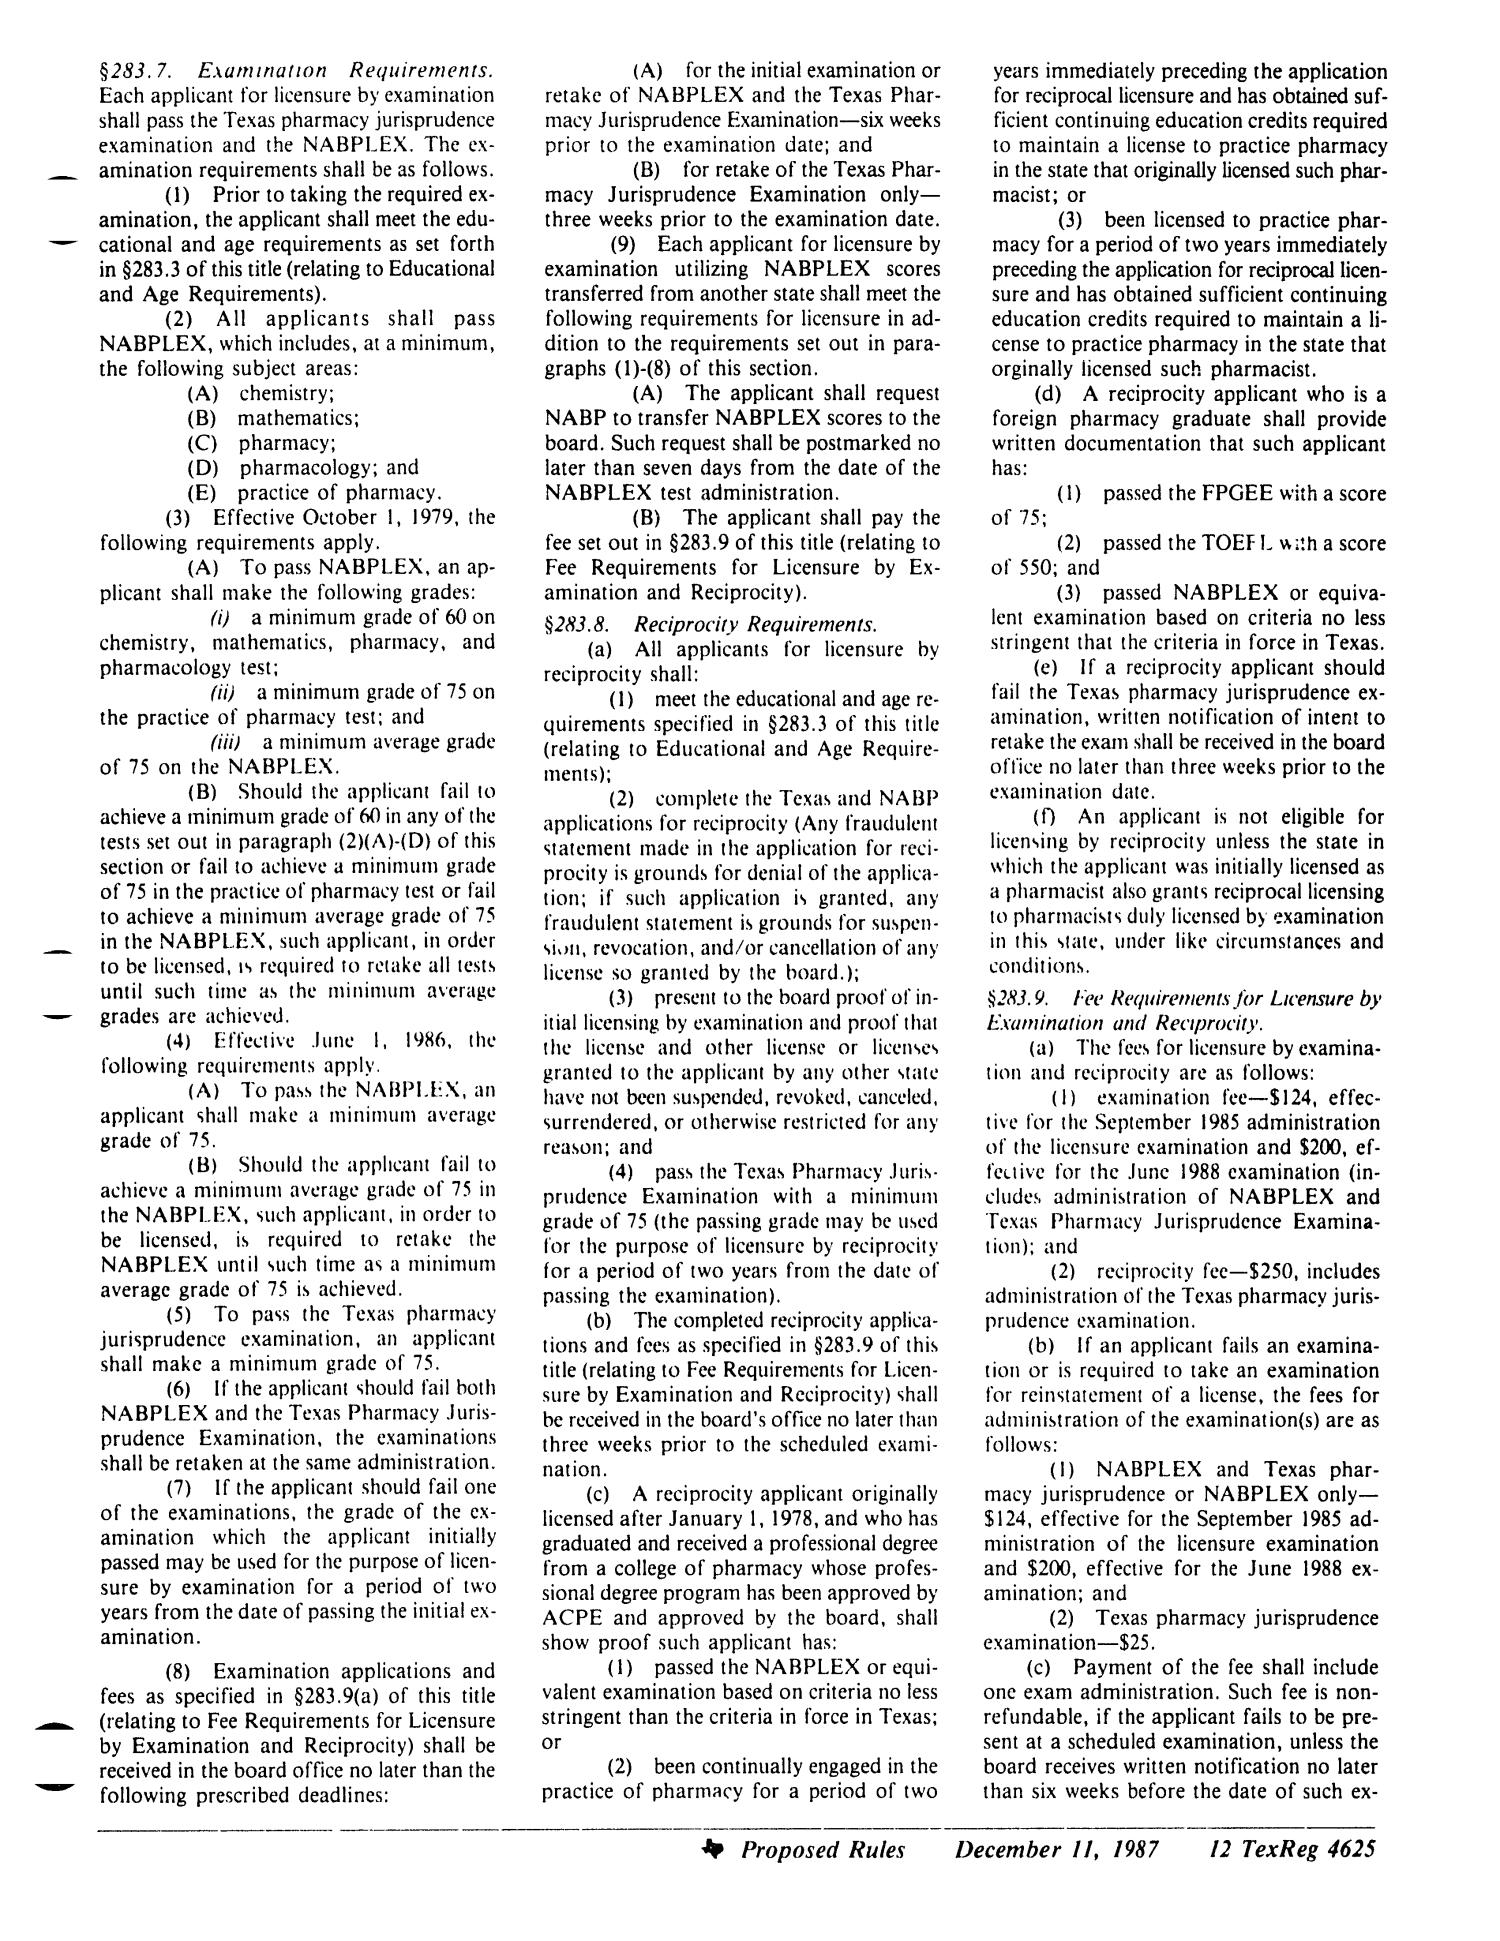 Texas Register, Volume 12, Number 92, Pages 4605-4656, December 11, 1987
                                                
                                                    4625
                                                